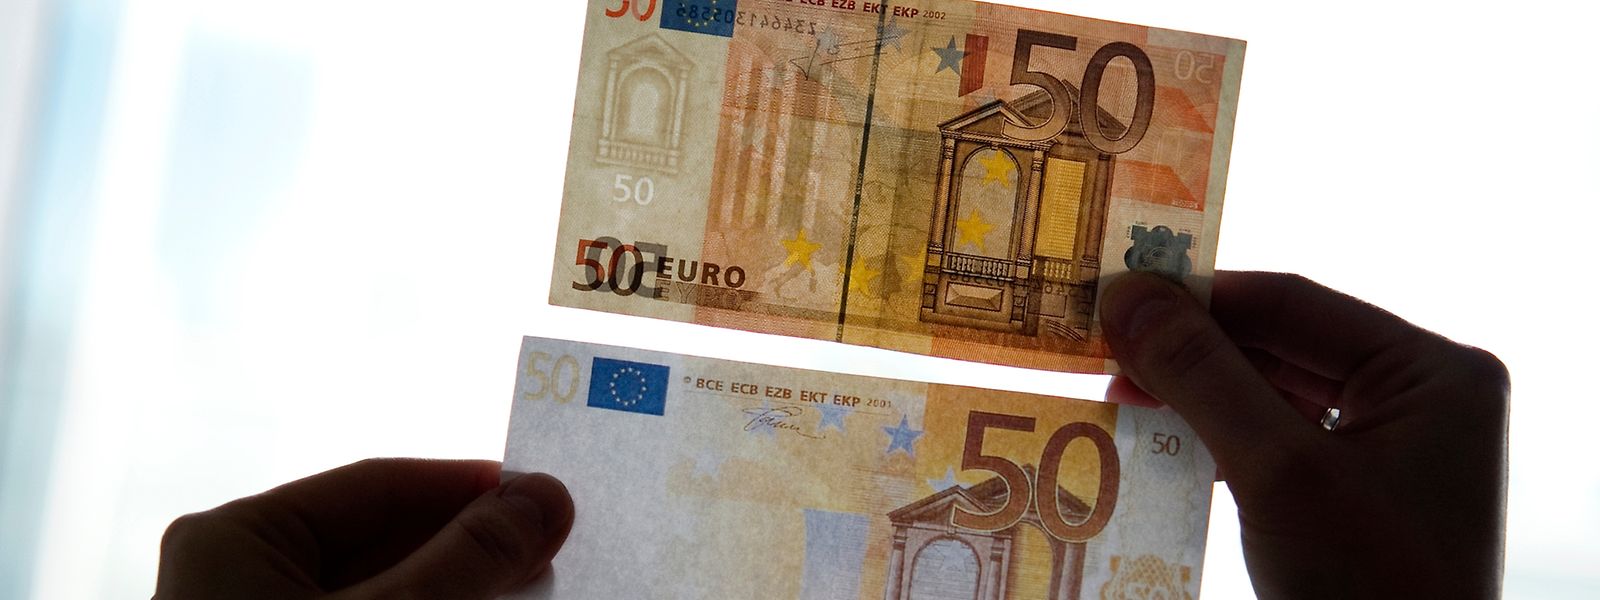 20- und 50-Euroscheine werden besonders häufig gefälscht. 